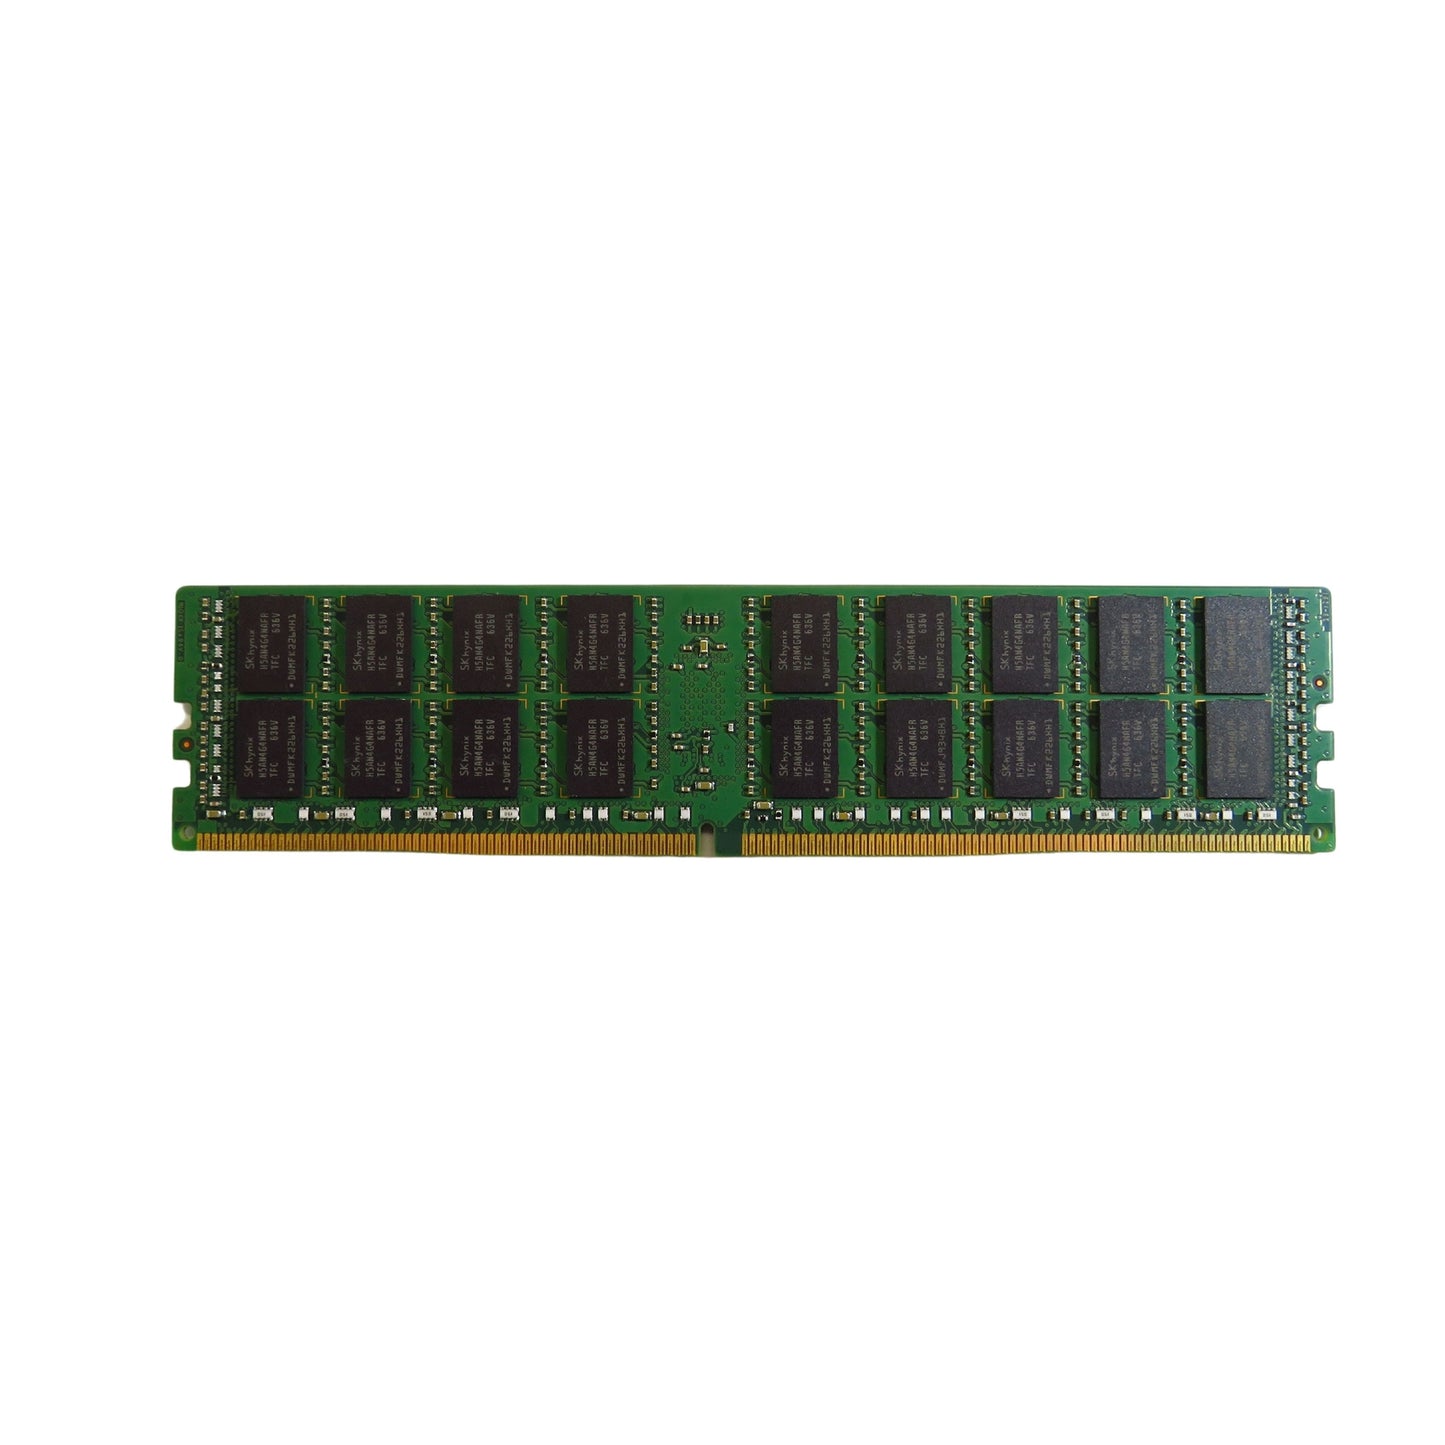 Supermicro MEM-DR416L-HL02-ER21 16GB DDR4 2133MHz PC4-17000 Server Memory (Refurbished)